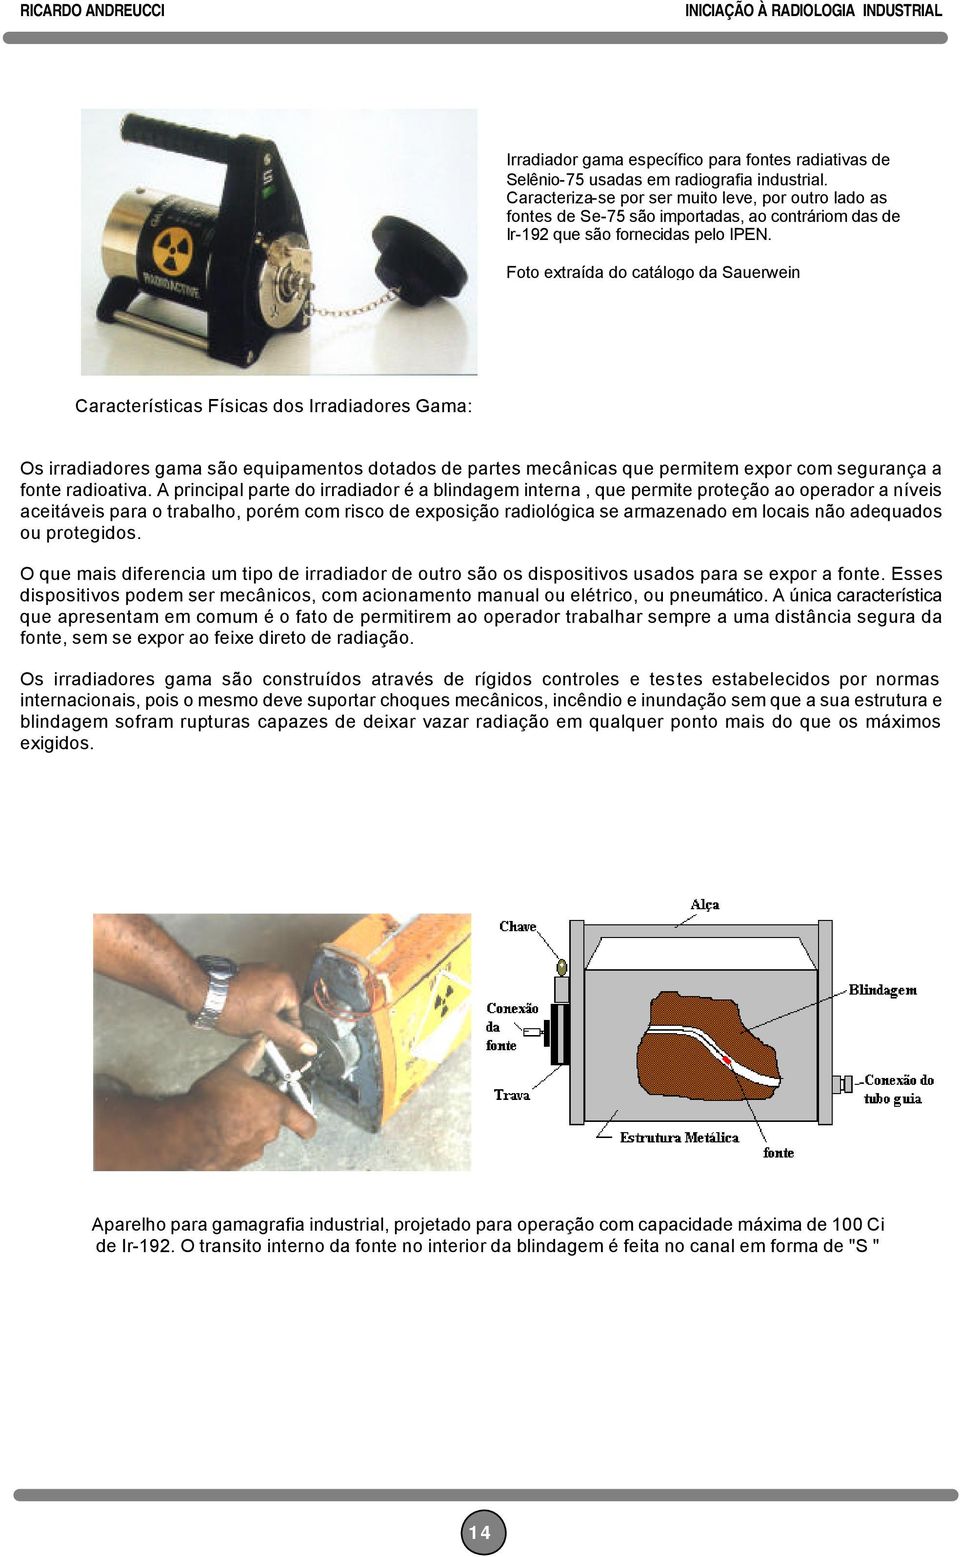 Foto extraída do catálogo da Sauerwein Características Físicas dos Irradiadores Gama: Os irradiadores gama são equipamentos dotados de partes mecânicas que permitem expor com segurança a fonte